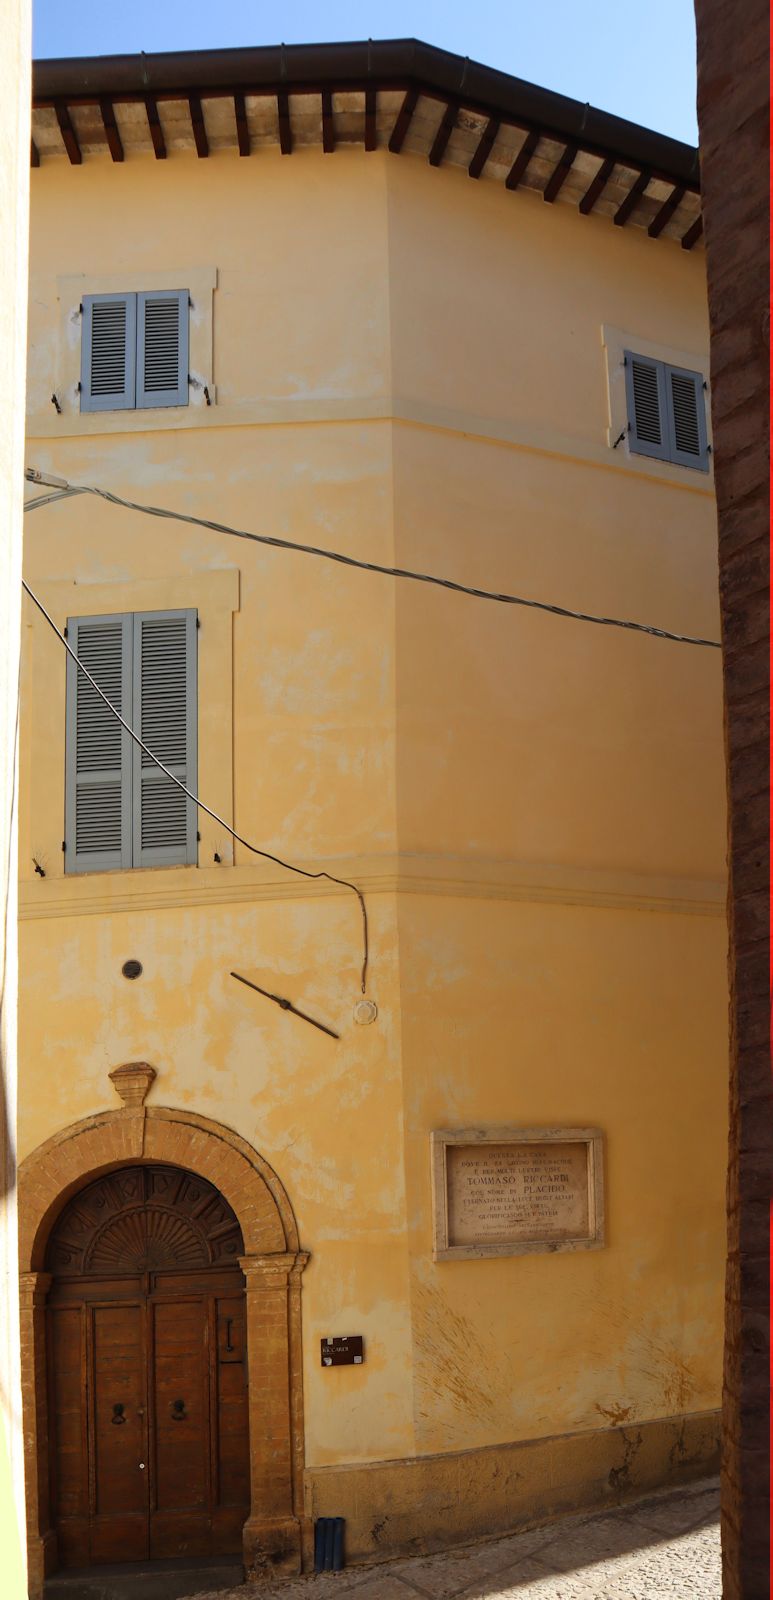 Geburtshaus mit Gedenktafel in Trevi